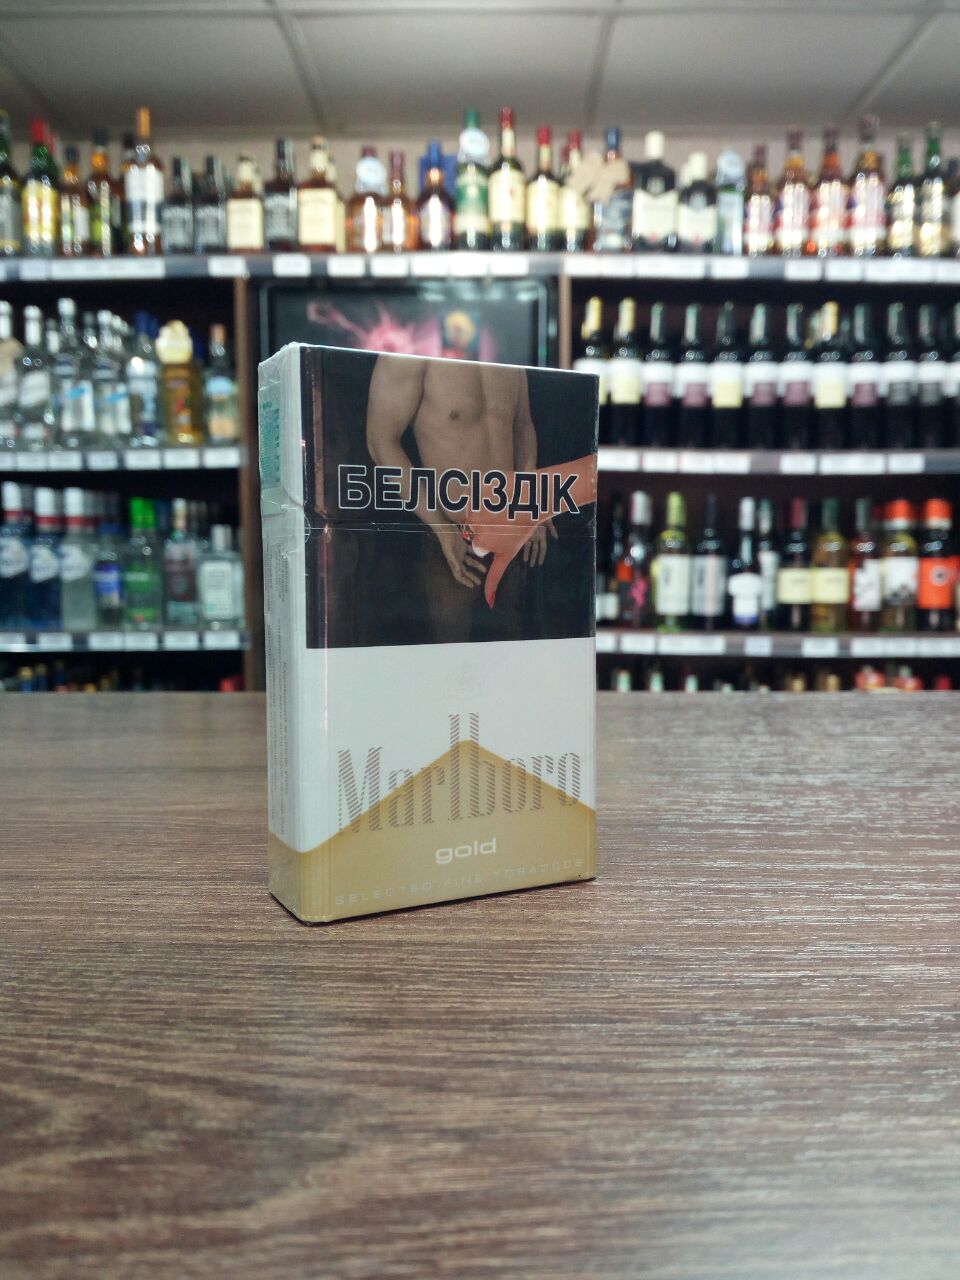 Сигареты "Marlboro" Алкомаркет24 в Уральске